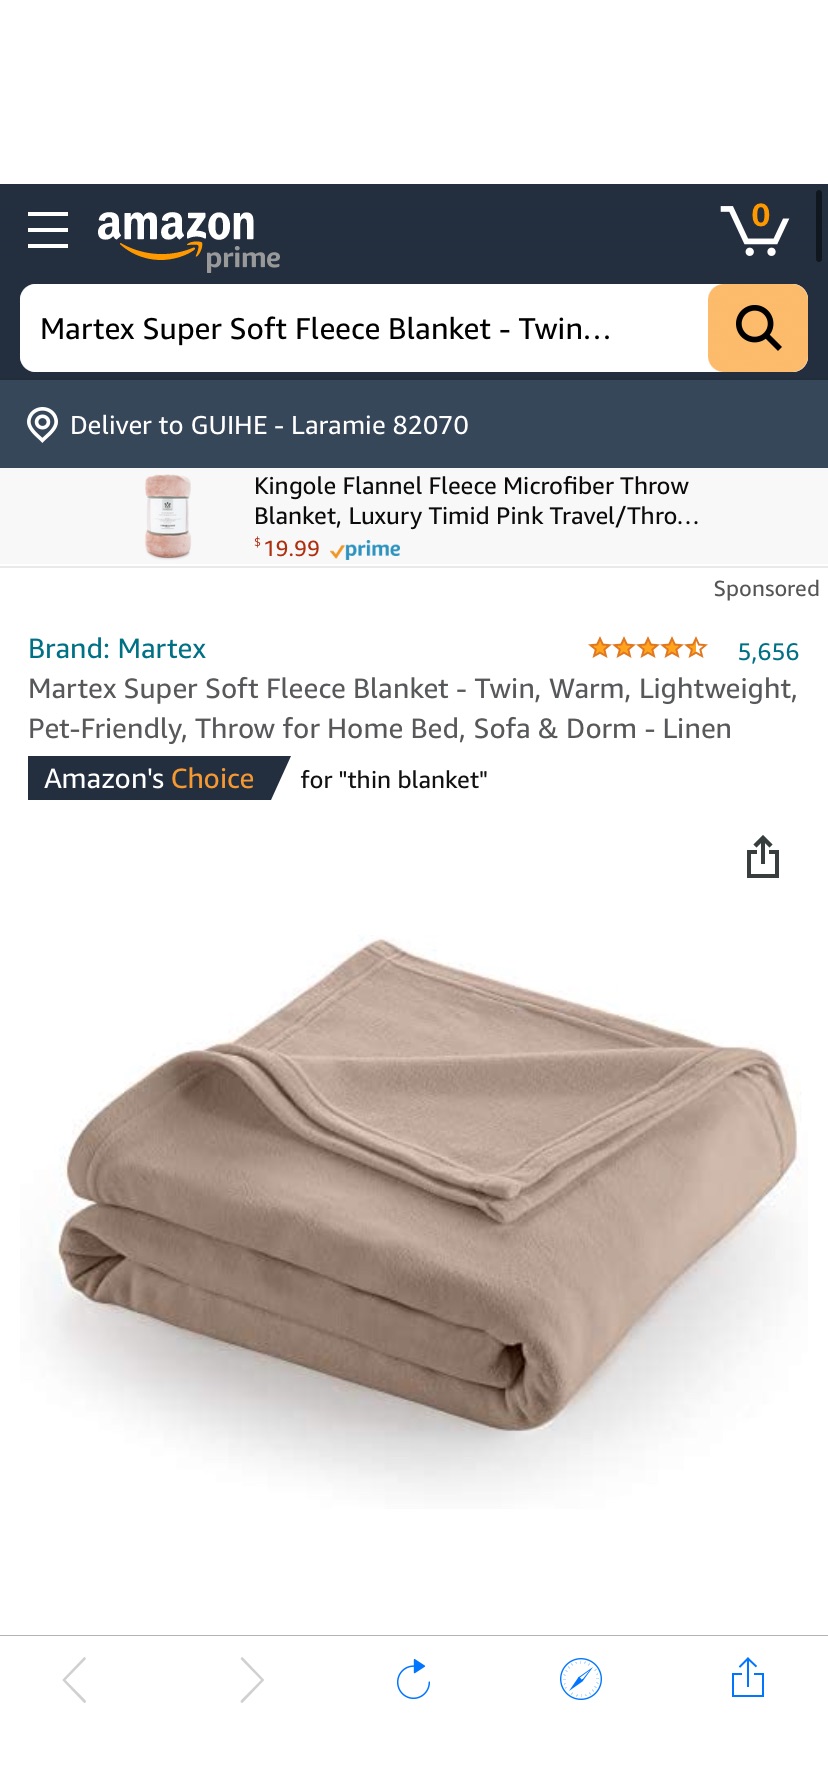 超轻超软twin size毛毯
Amazon.com: Martex Super Soft Fleece Blanket - Twin, Warm, Lightweight, Pet-Friendly, Throw for Home Bed, Sofa & Dorm - Linen: Home & Kitchen